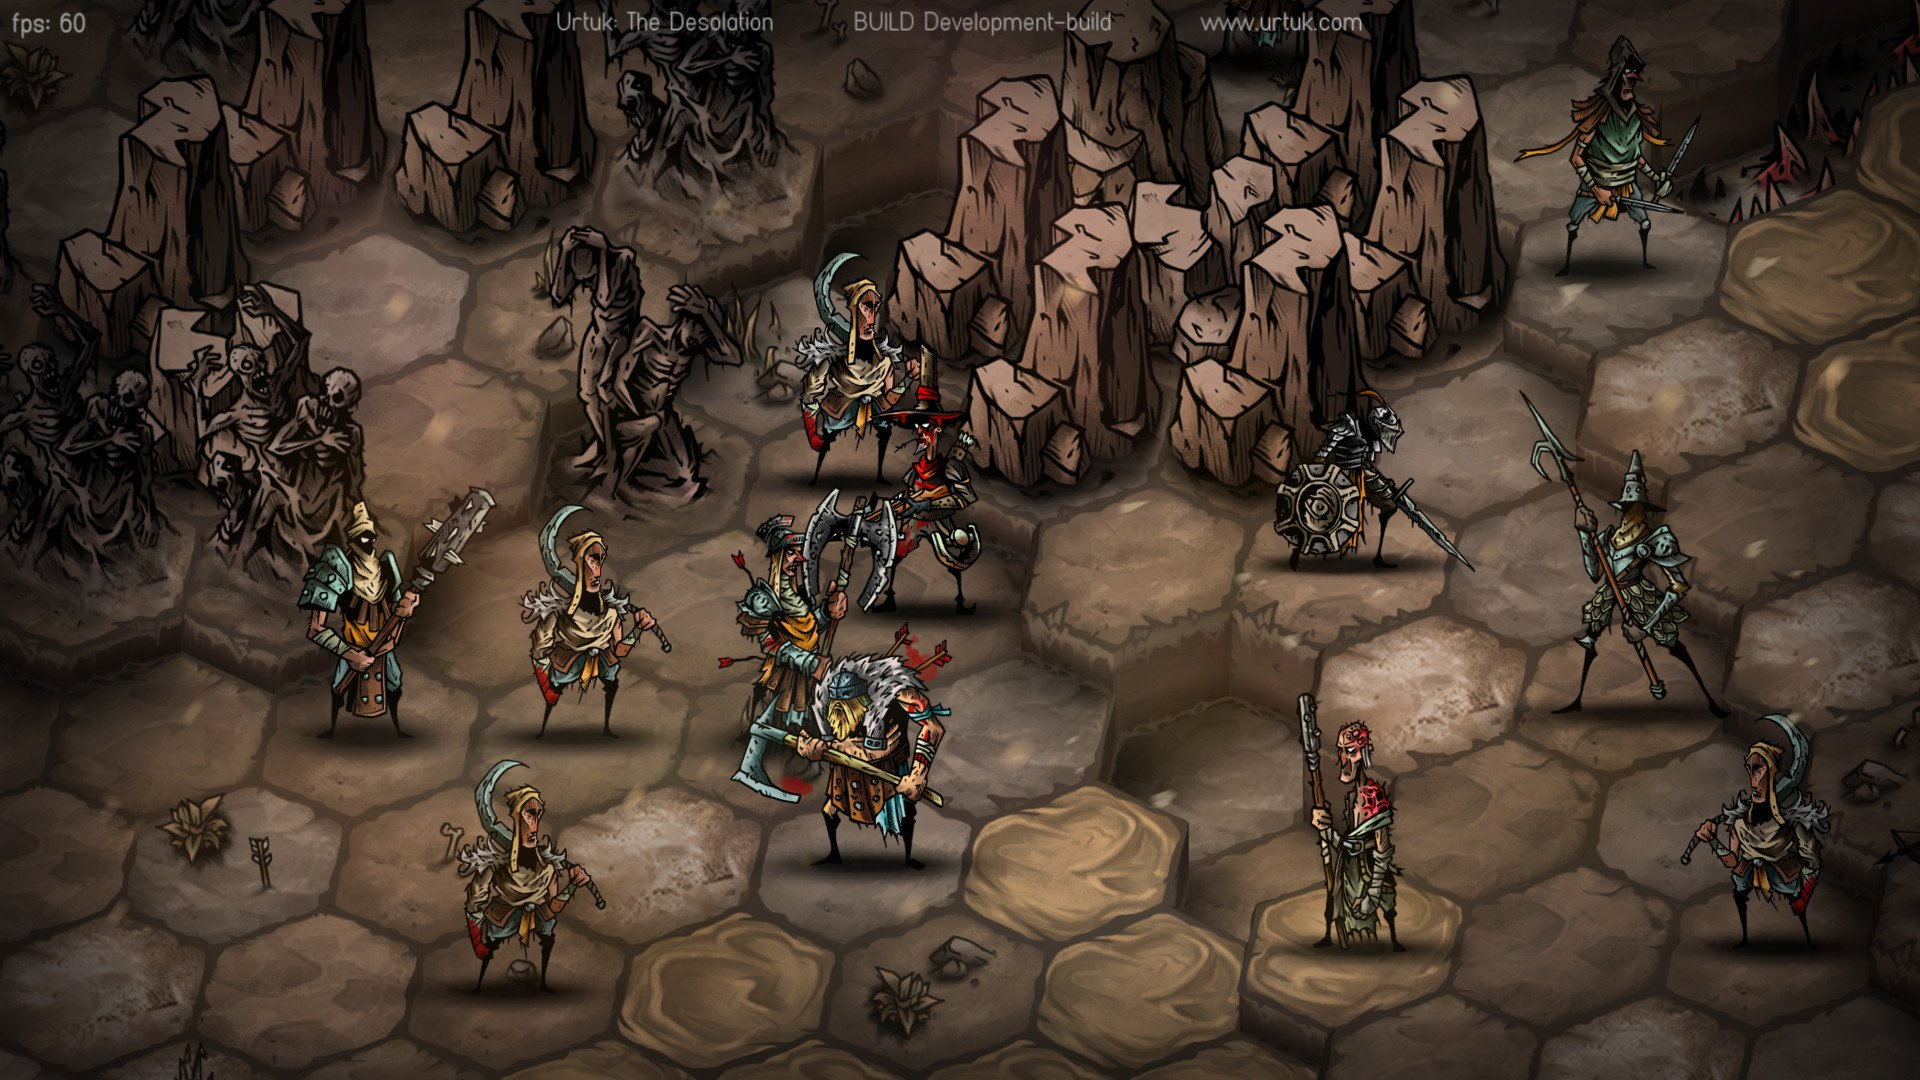 Скриншот из игры Urtuk: The Desolation под номером 2